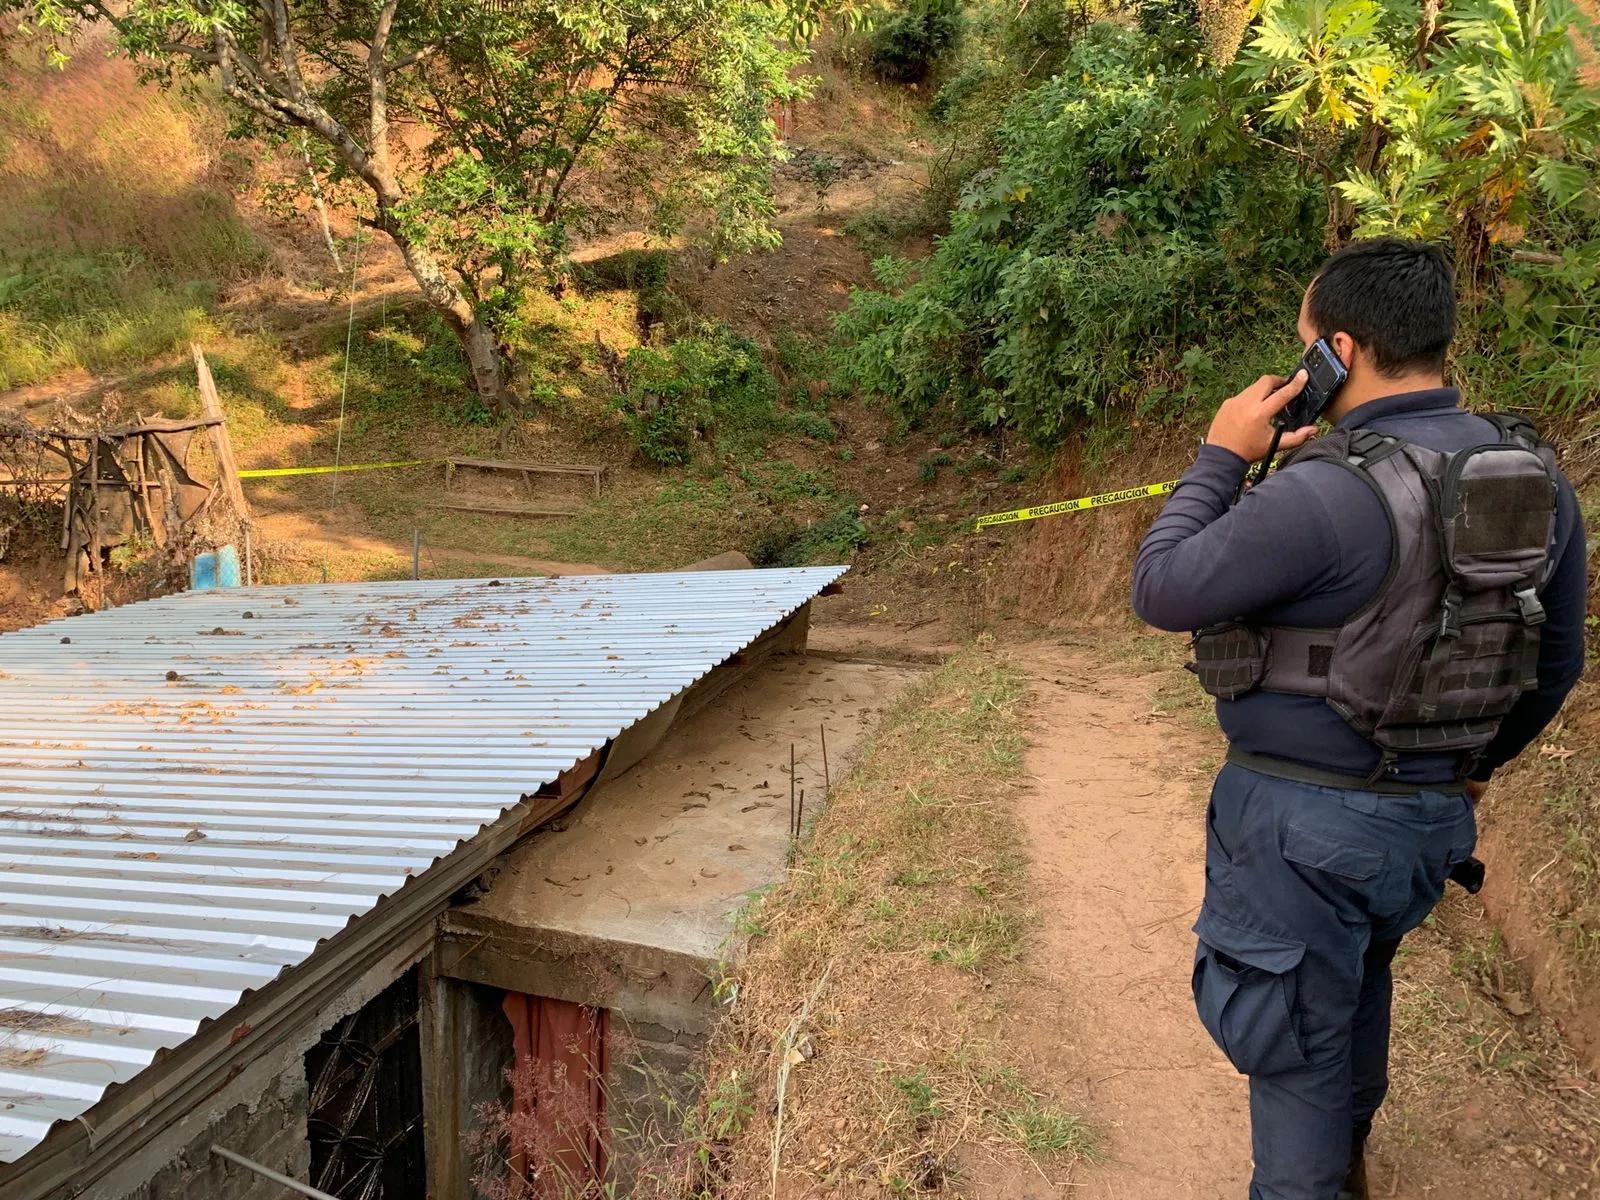 Matan a hombre en una barranca al norte de Uruapan